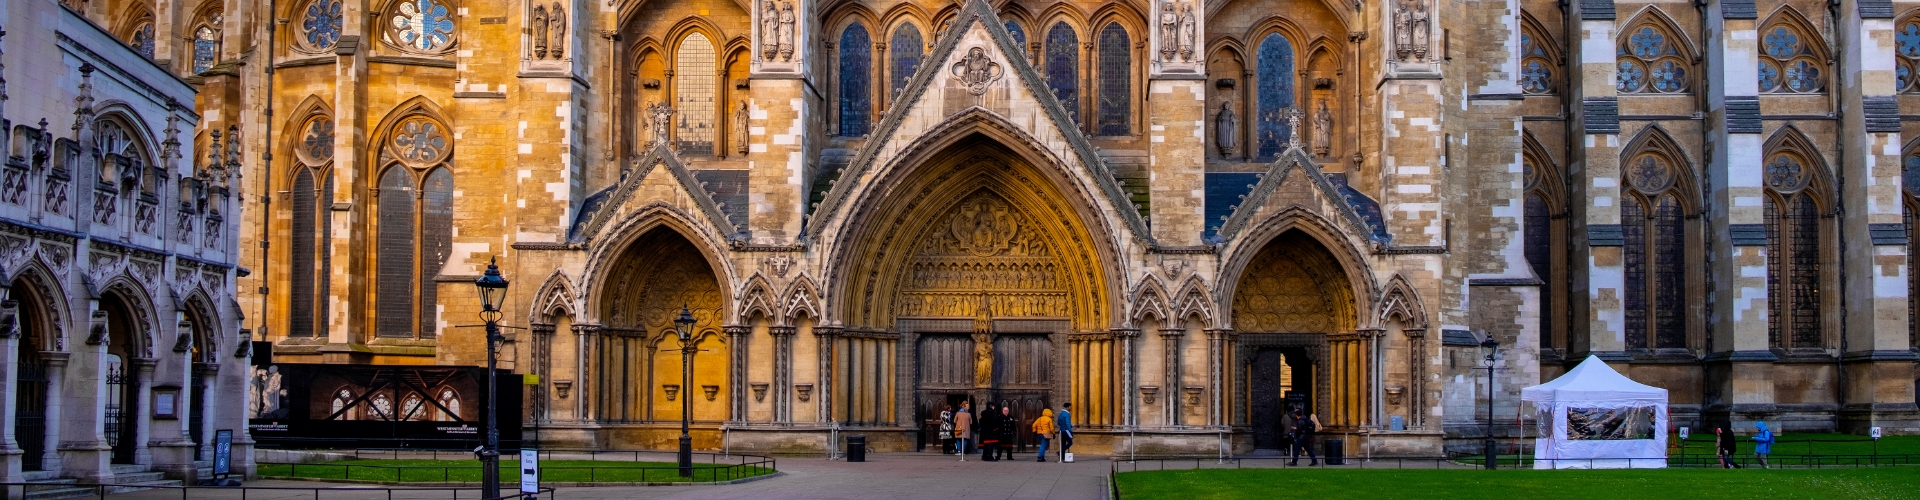 Foto da Entrada da Abadia de Westminster, na Inglaterra